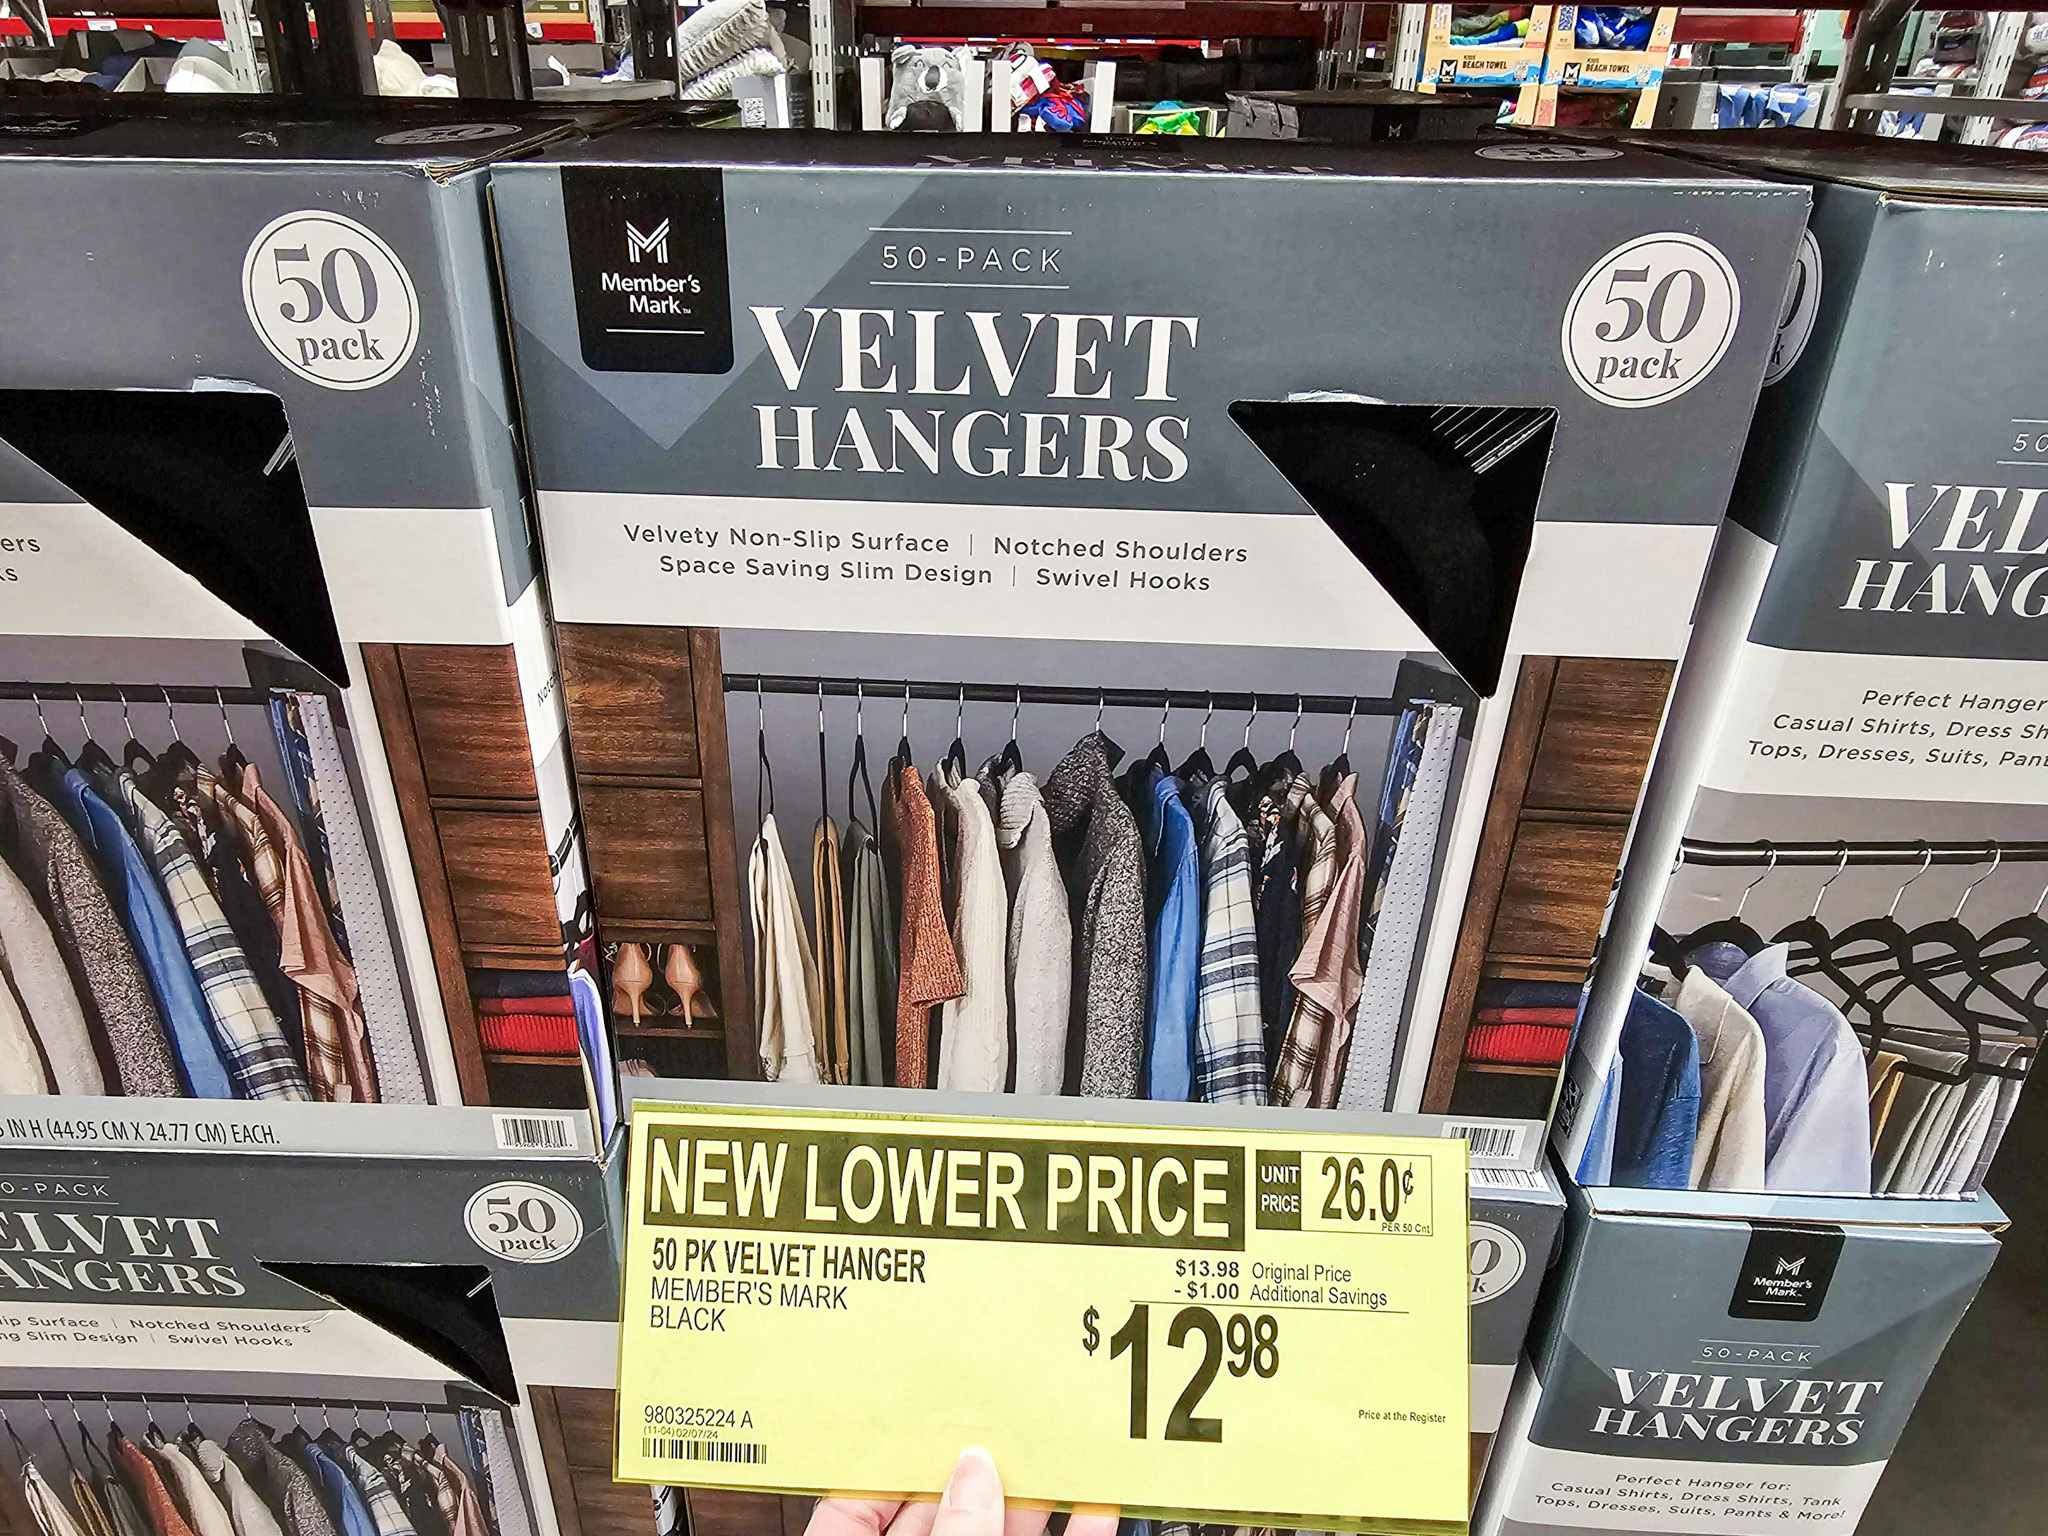 a sign for $12.98 for 50 packs of velvet hangers